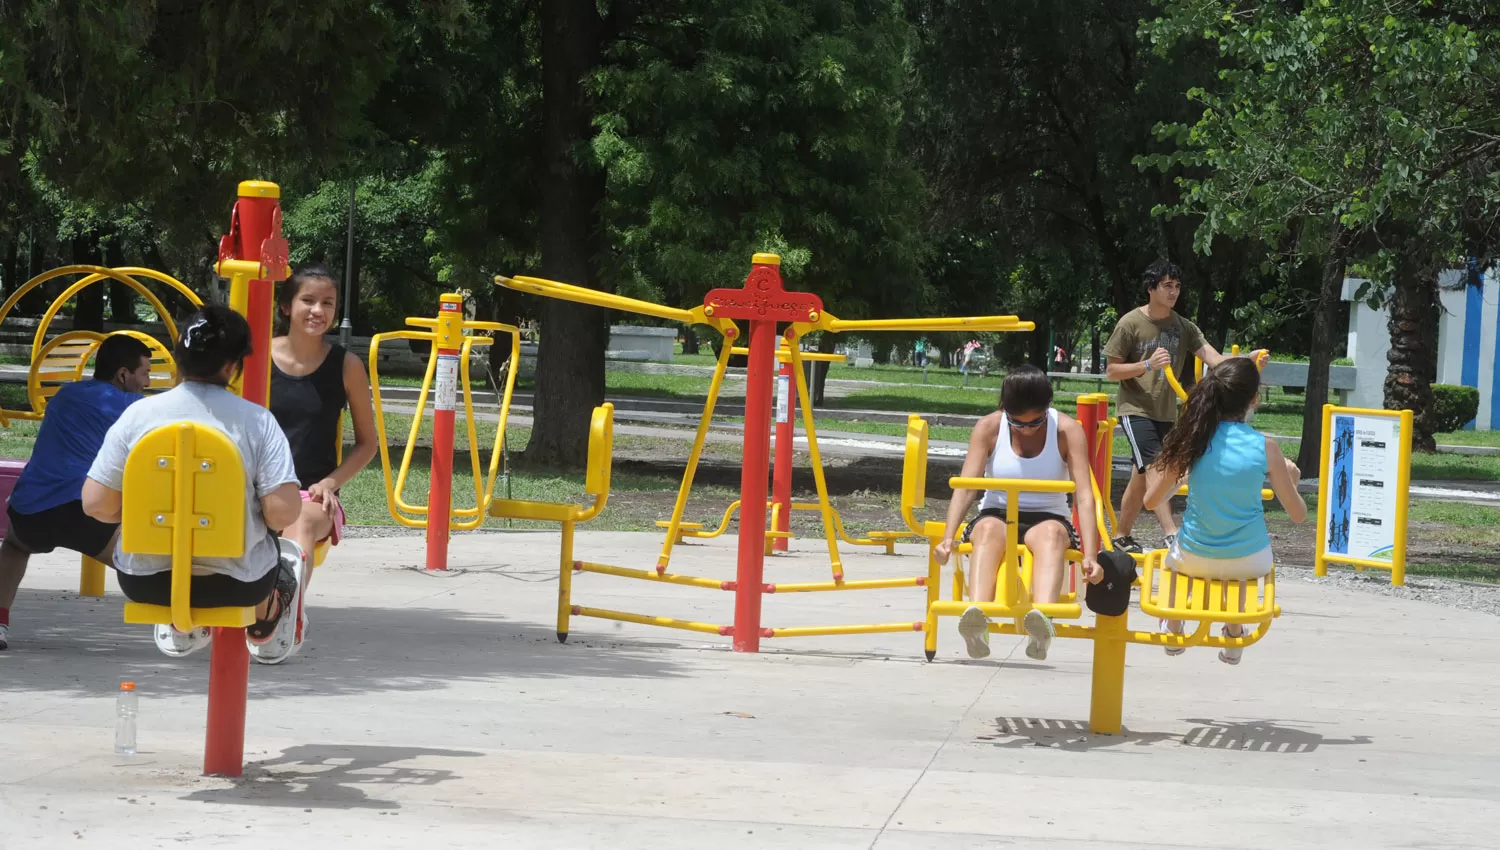 SALUD. Las pistas equipadas para hacer ejercicios serán uno de los puntos de atracción de los parques y plazas tucumanas este domingo